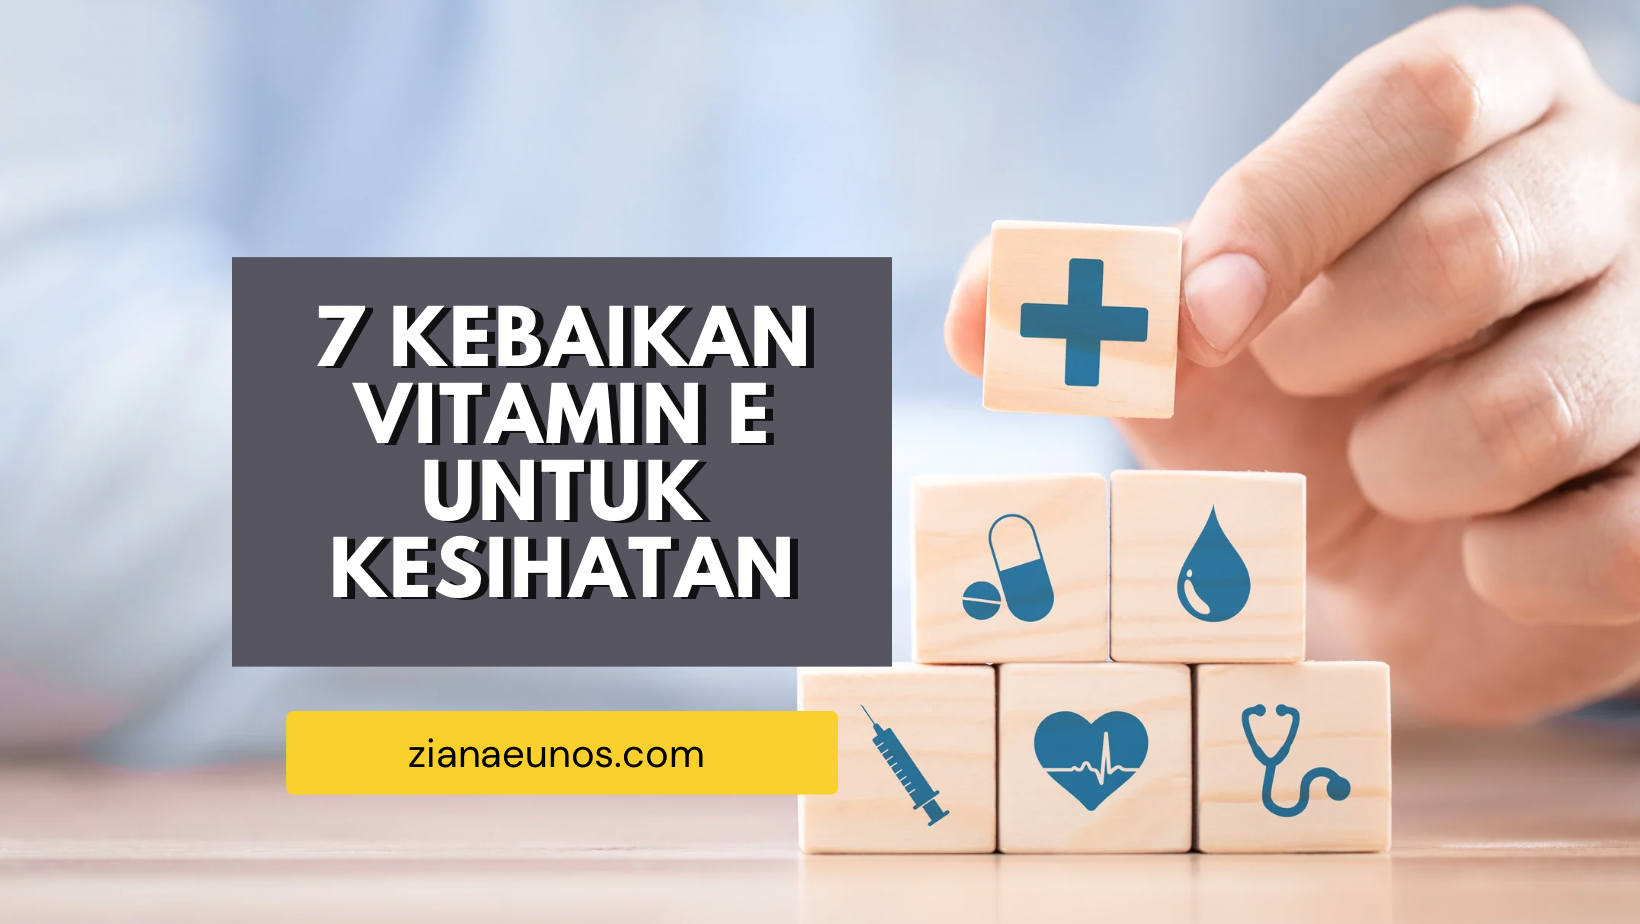 Kebaikan Vitamin E Untuk Kesihatan